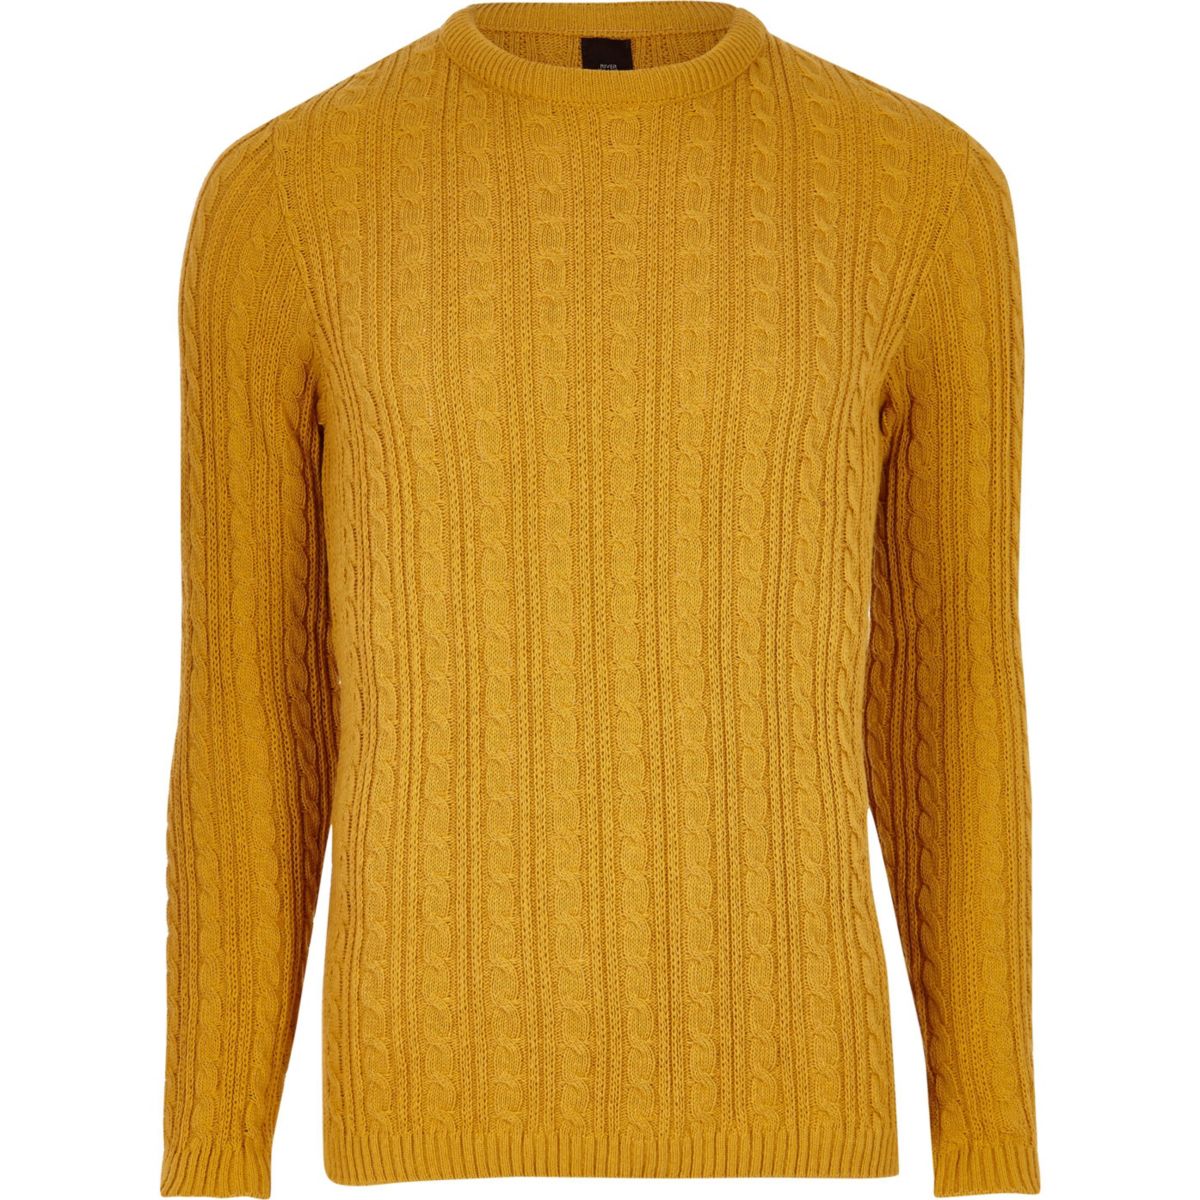 Mustard yellow long cardigan sweater men plus size